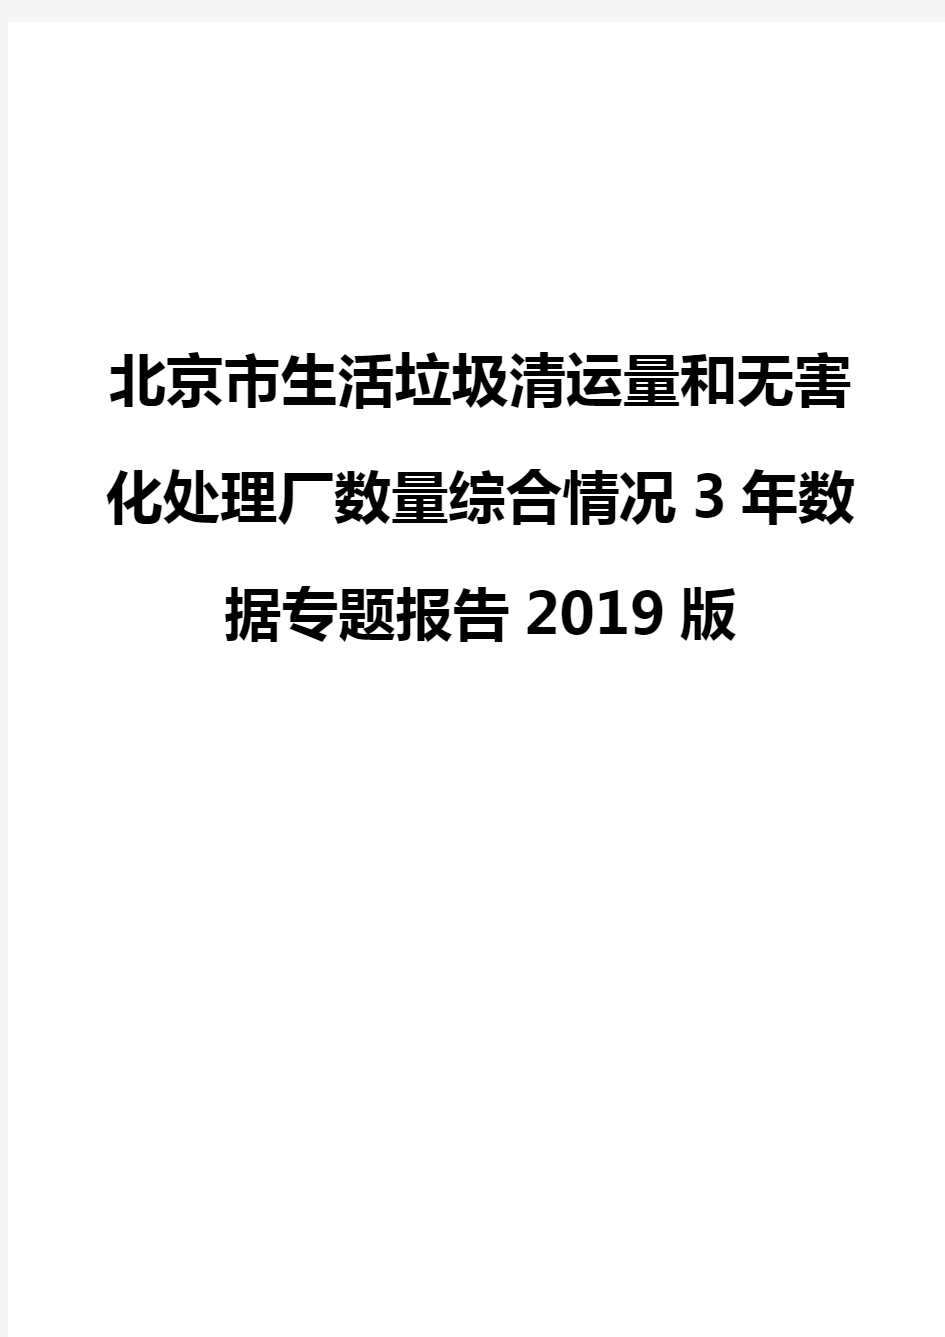 北京市生活垃圾清运量和无害化处理厂数量综合情况3年数据专题报告2019版